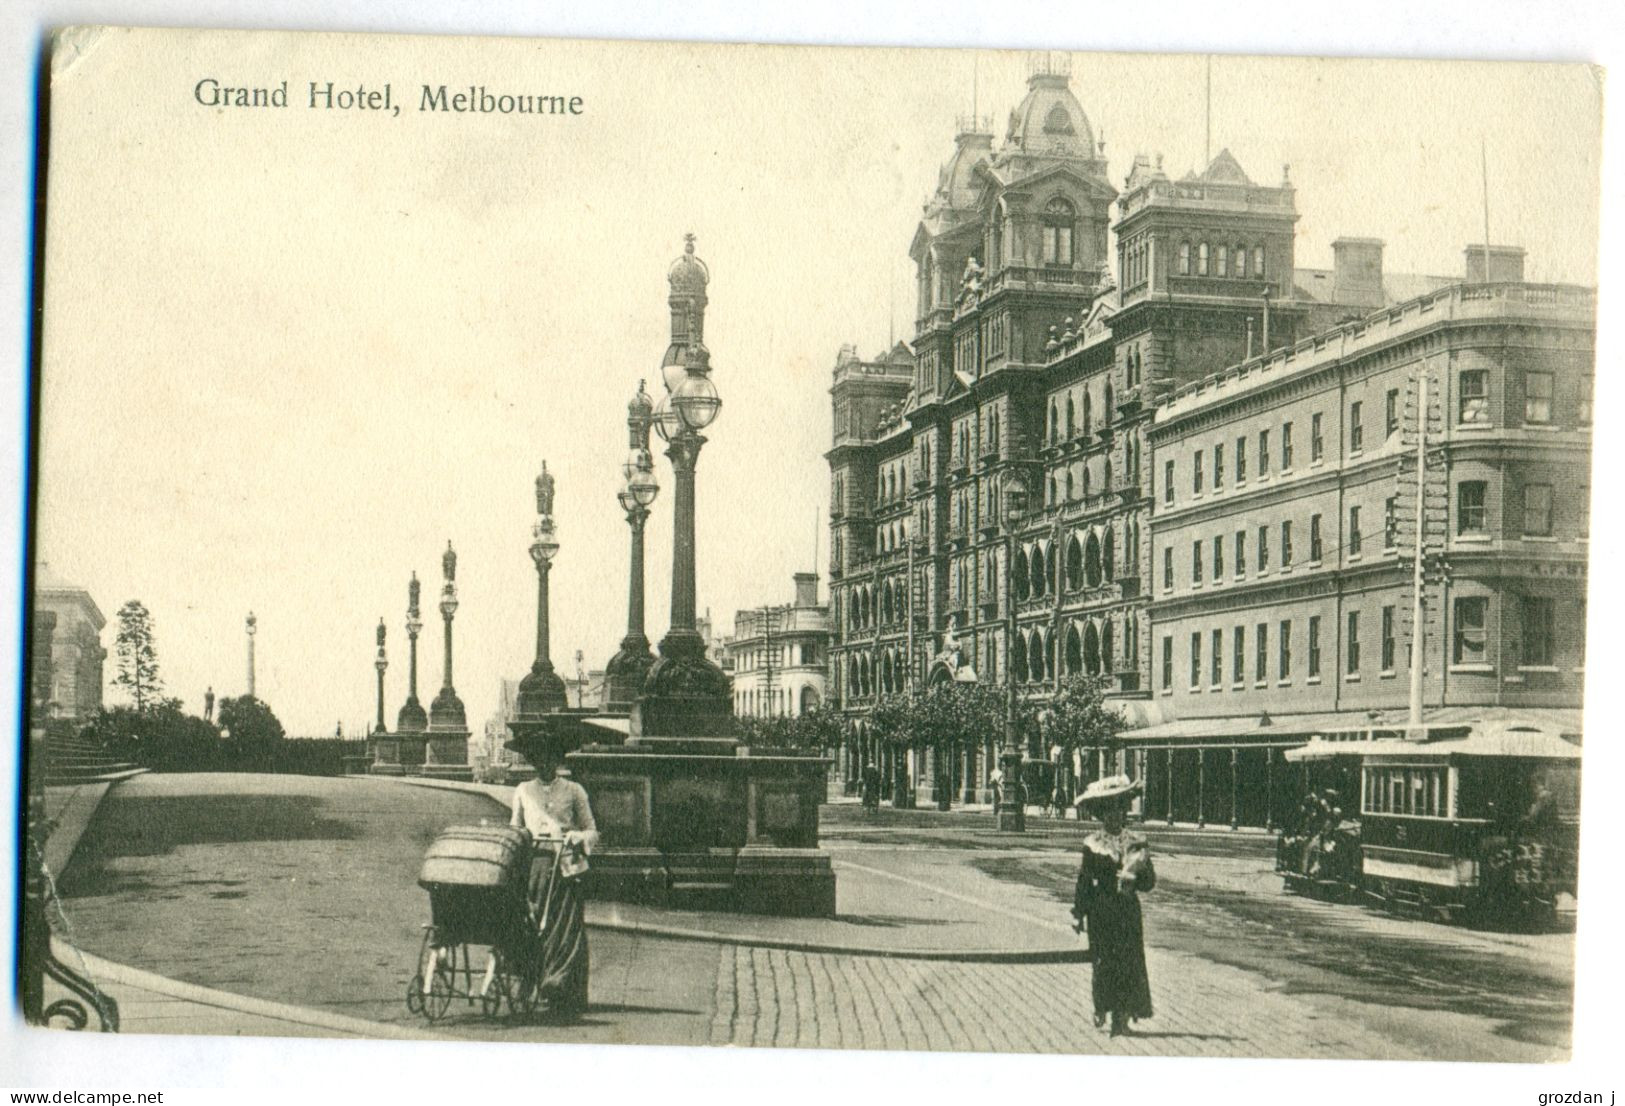 Grand Hotel, Melbourne, Victoria, Australia - Melbourne